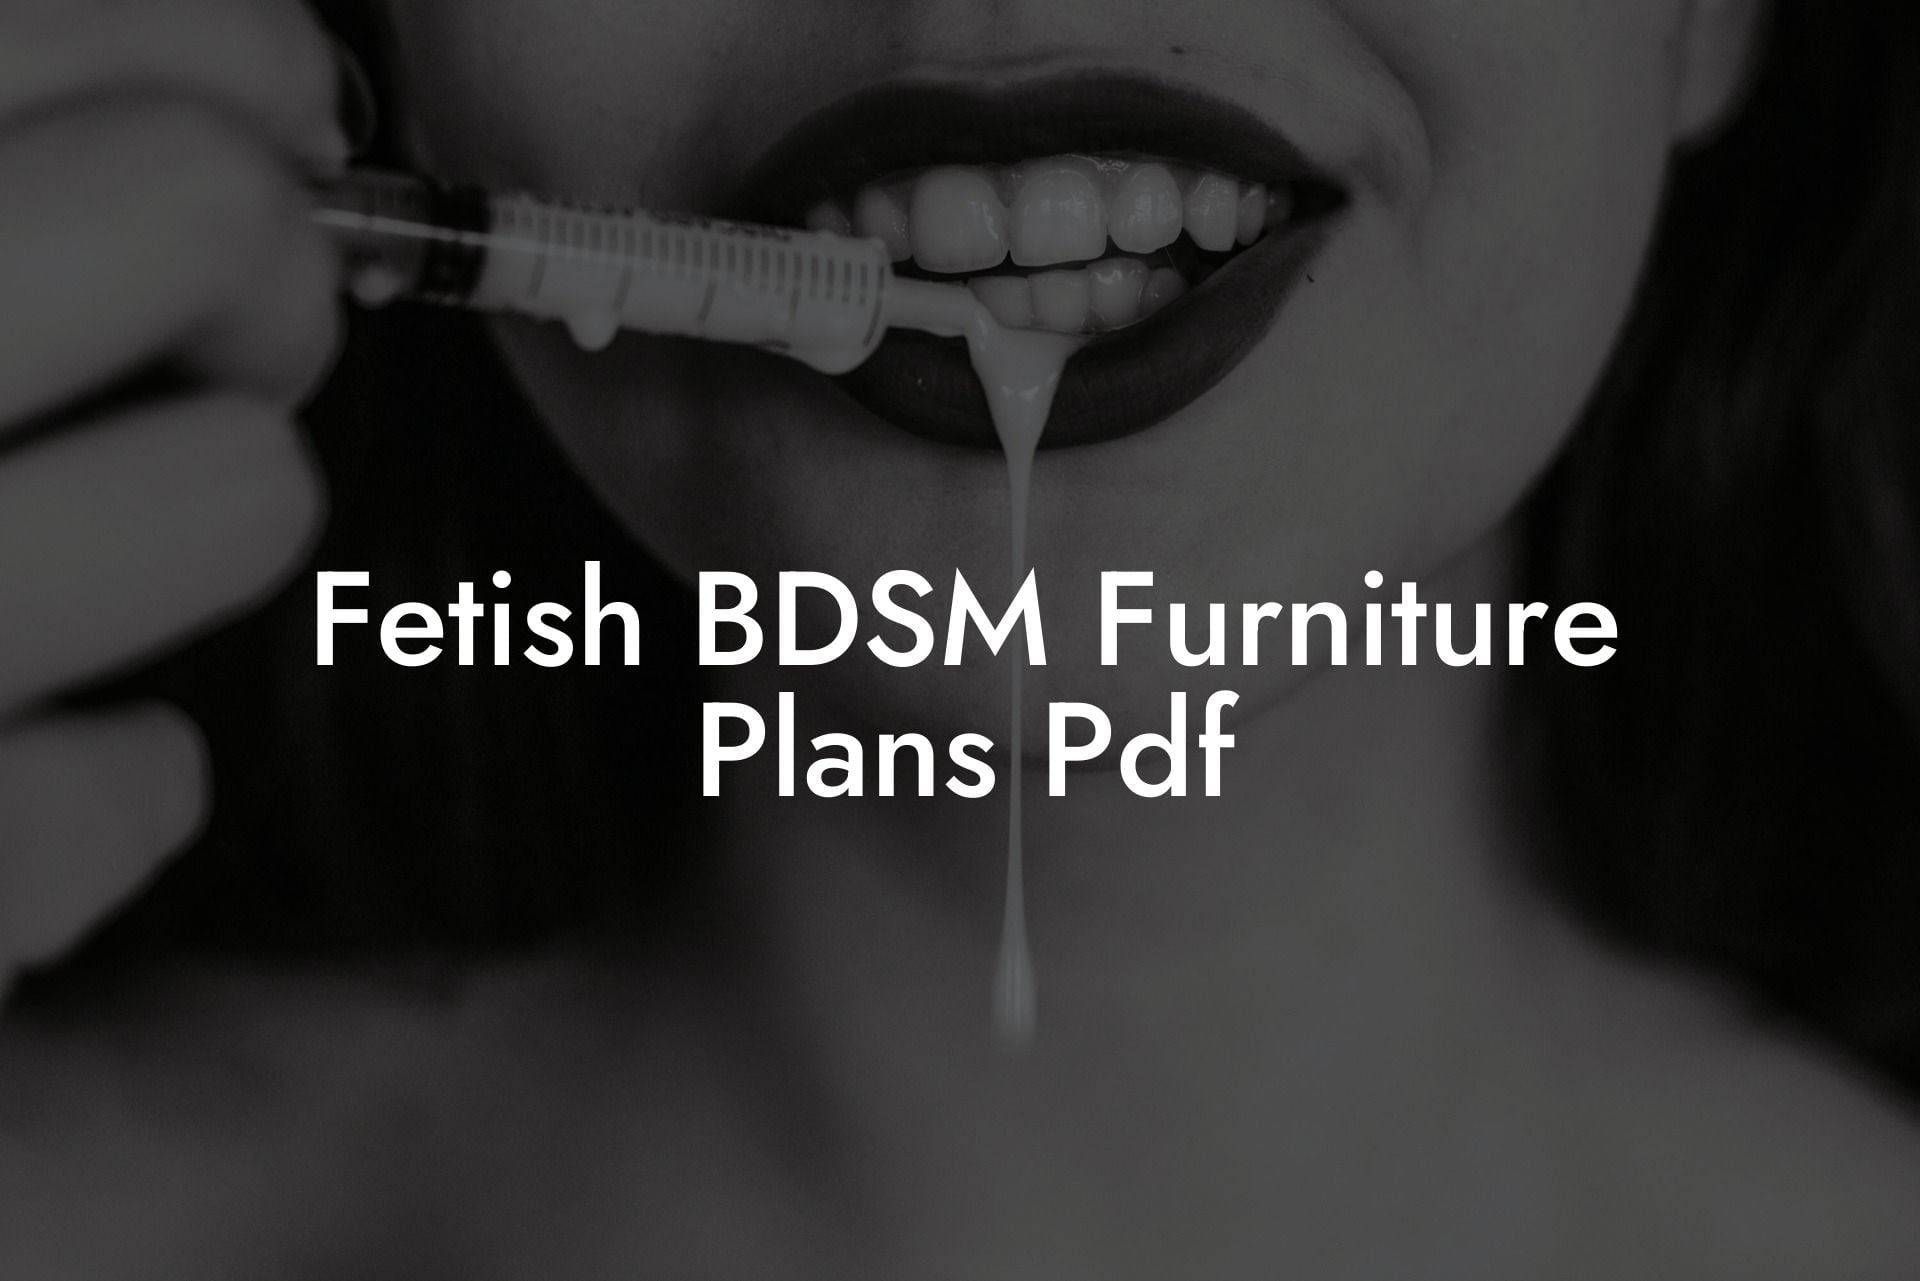 Fetish BDSM Furniture Plans Pdf